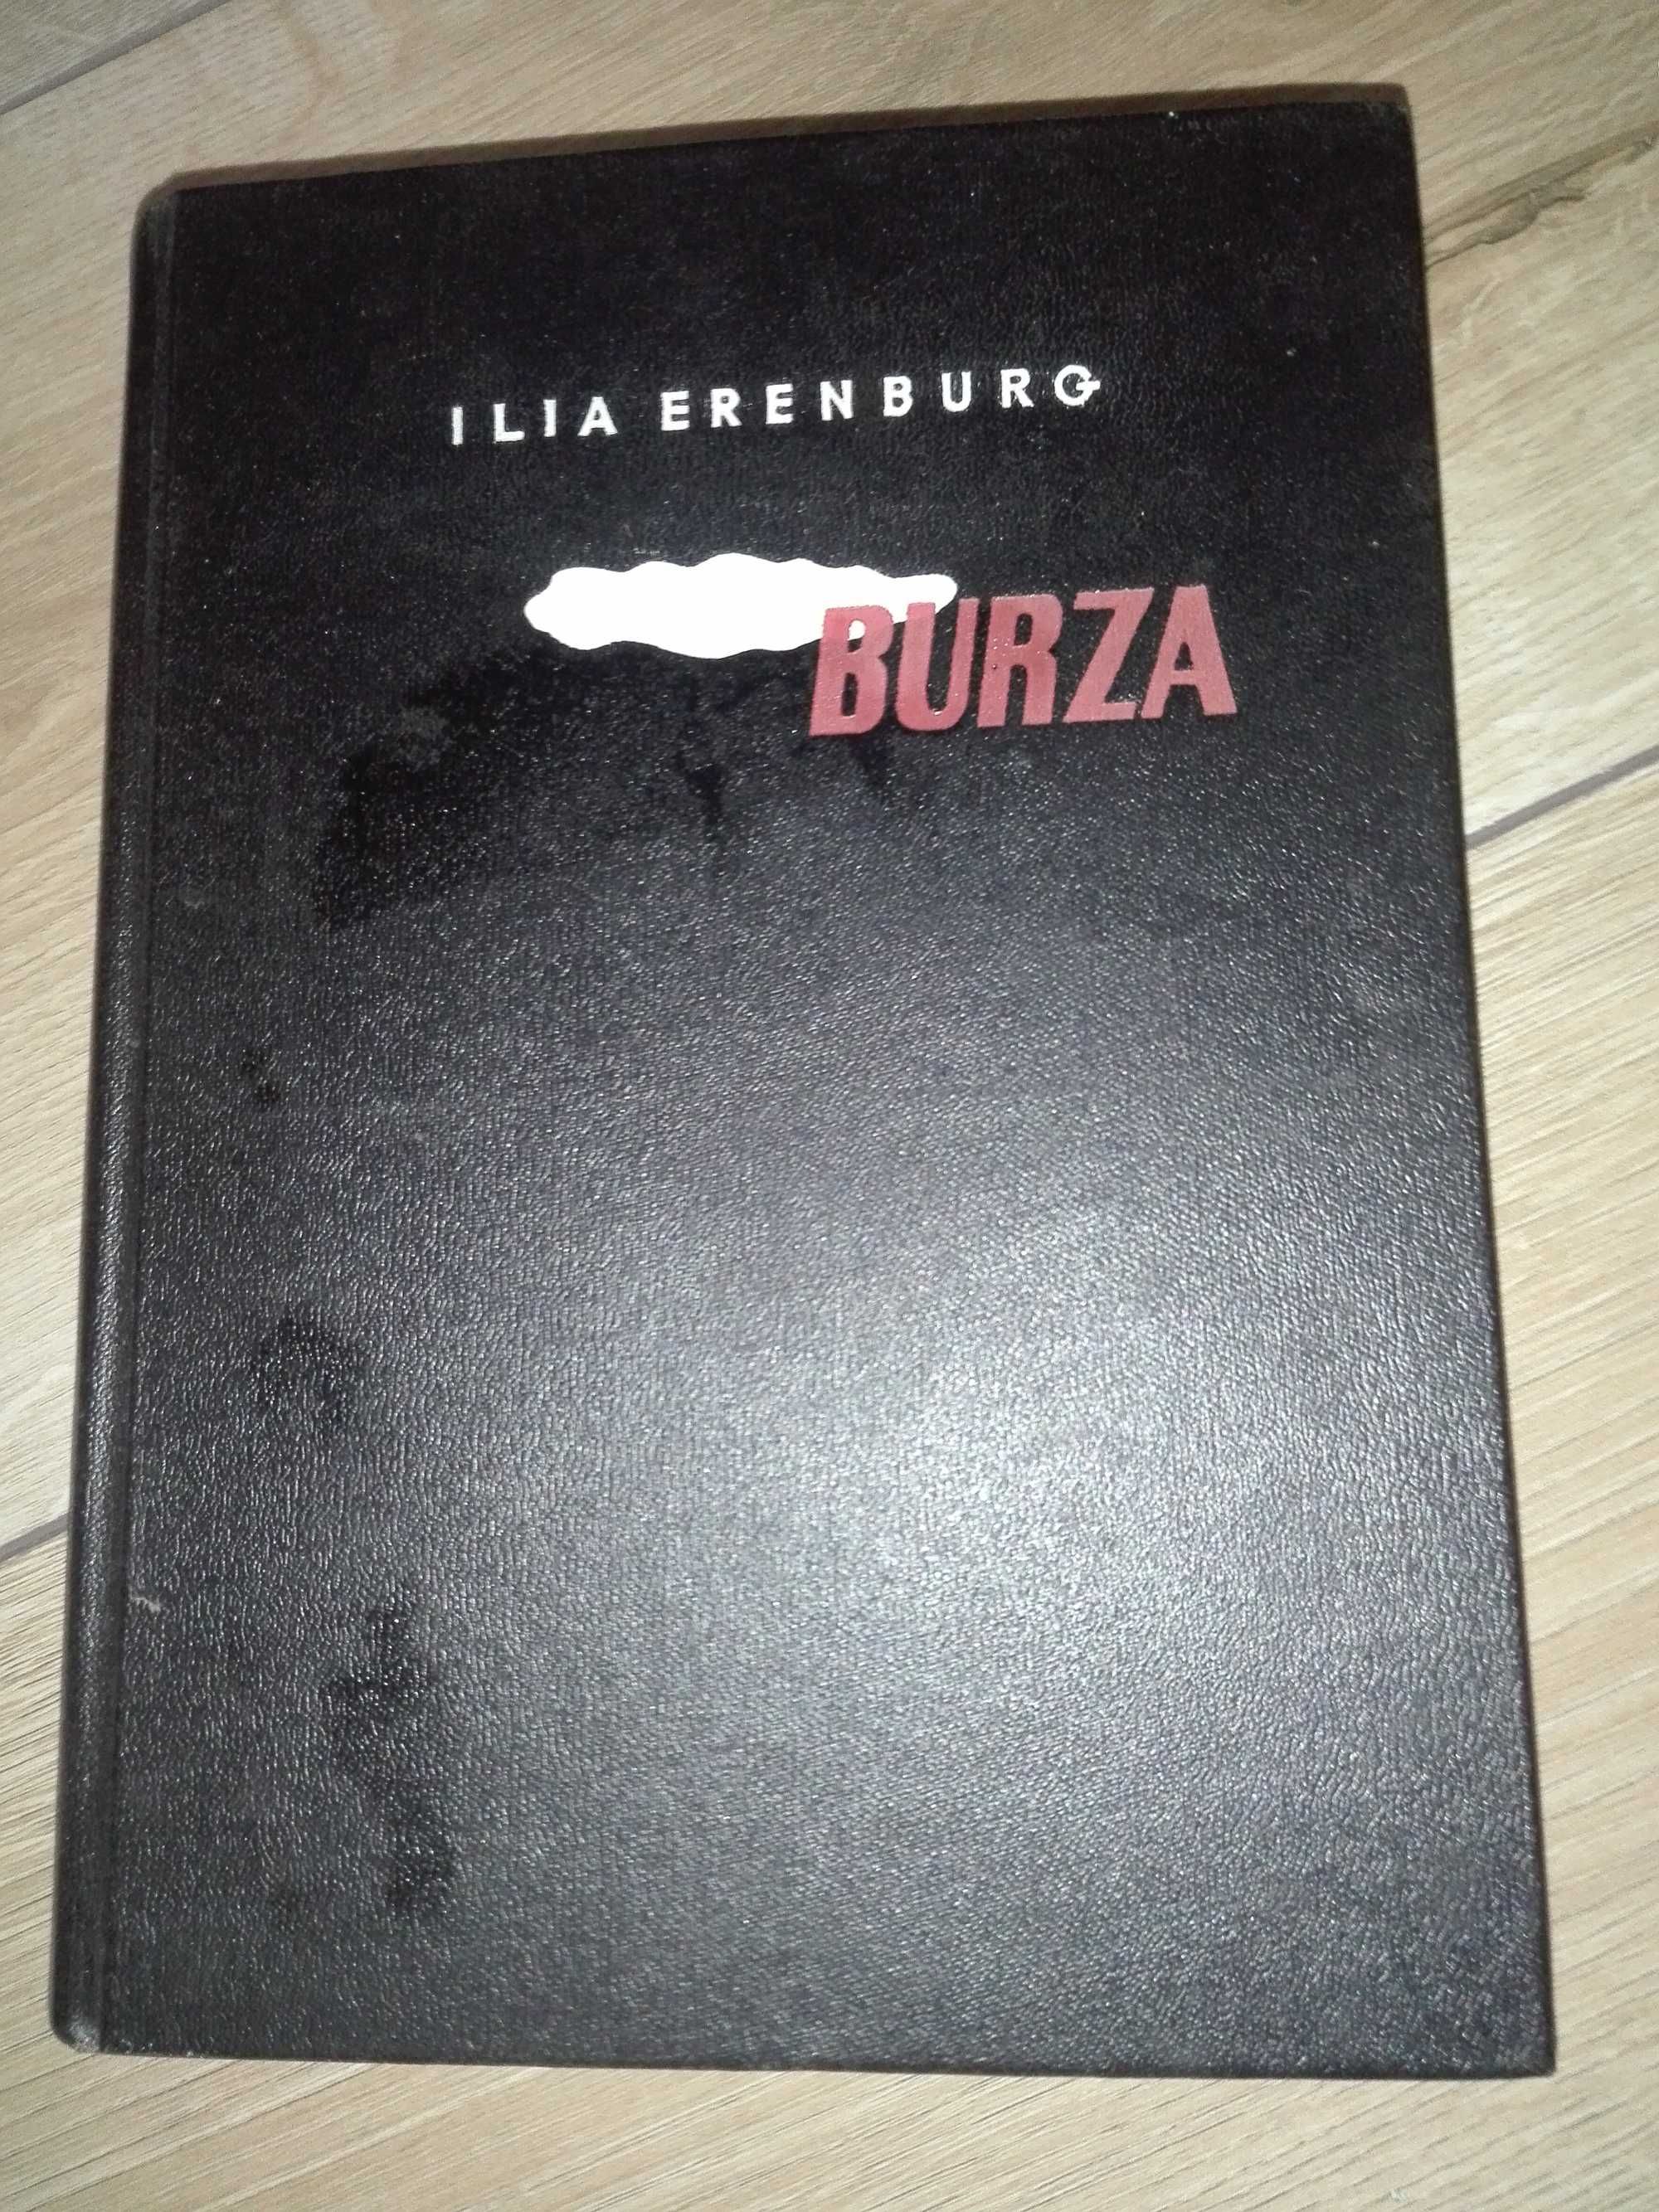 Ilia Erenburg "Burza" Warszawa 1950